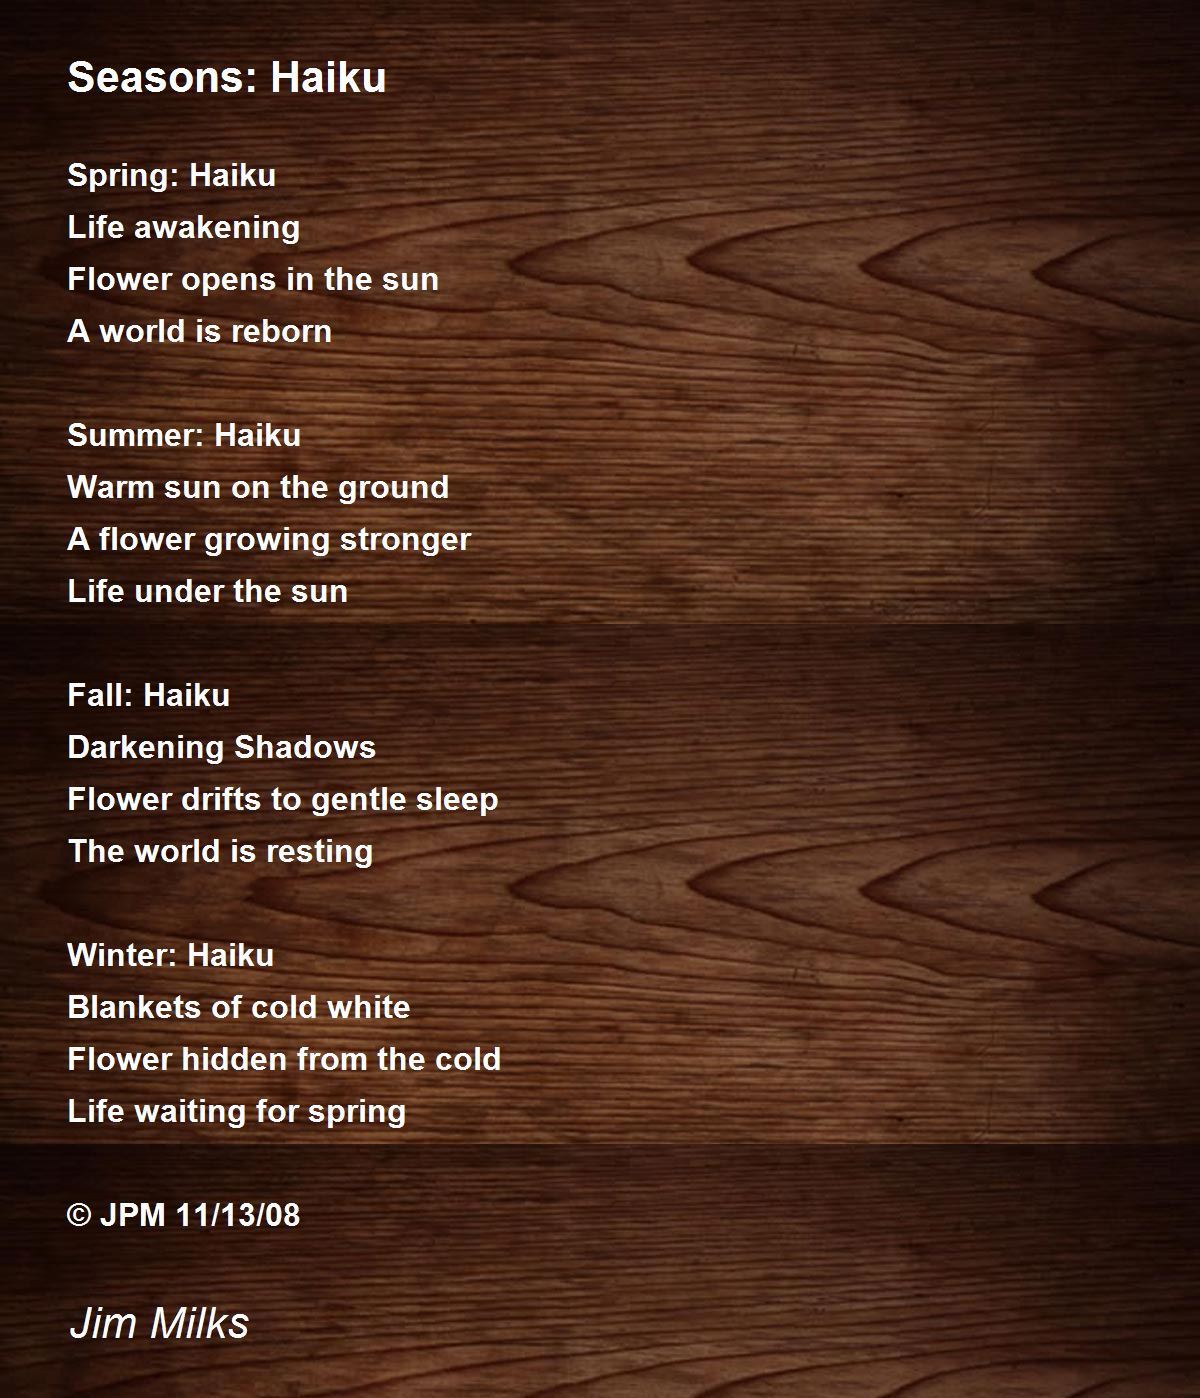 Seasons: Haiku Poem by Jim Milks - Poem Hunter